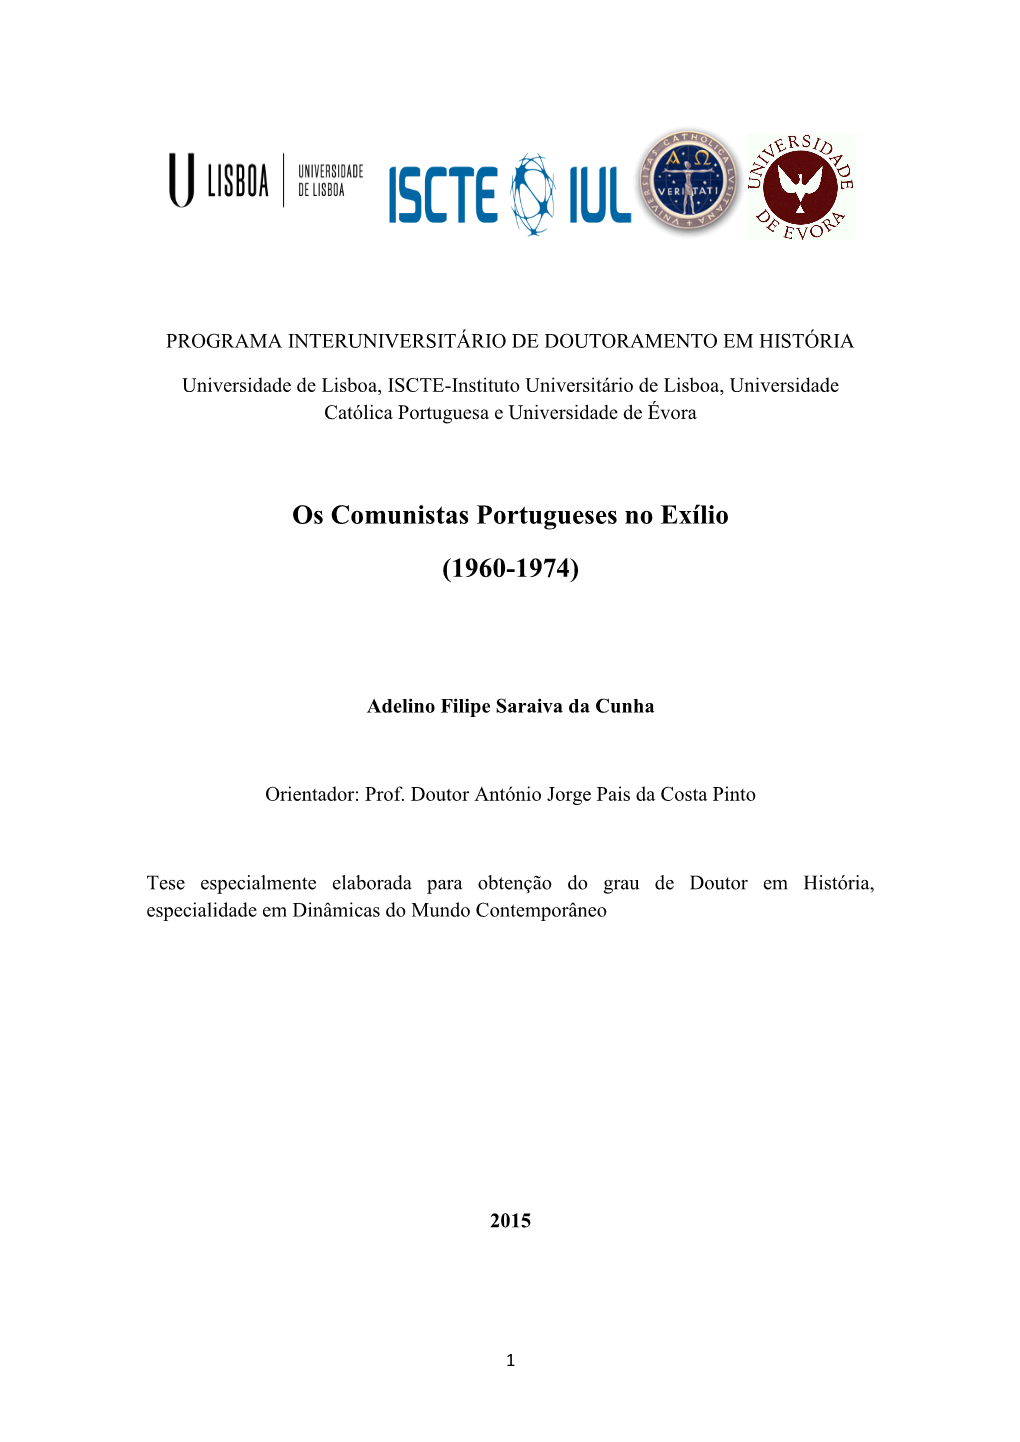 Os Comunistas Portugueses No Exílio (1960-1974)